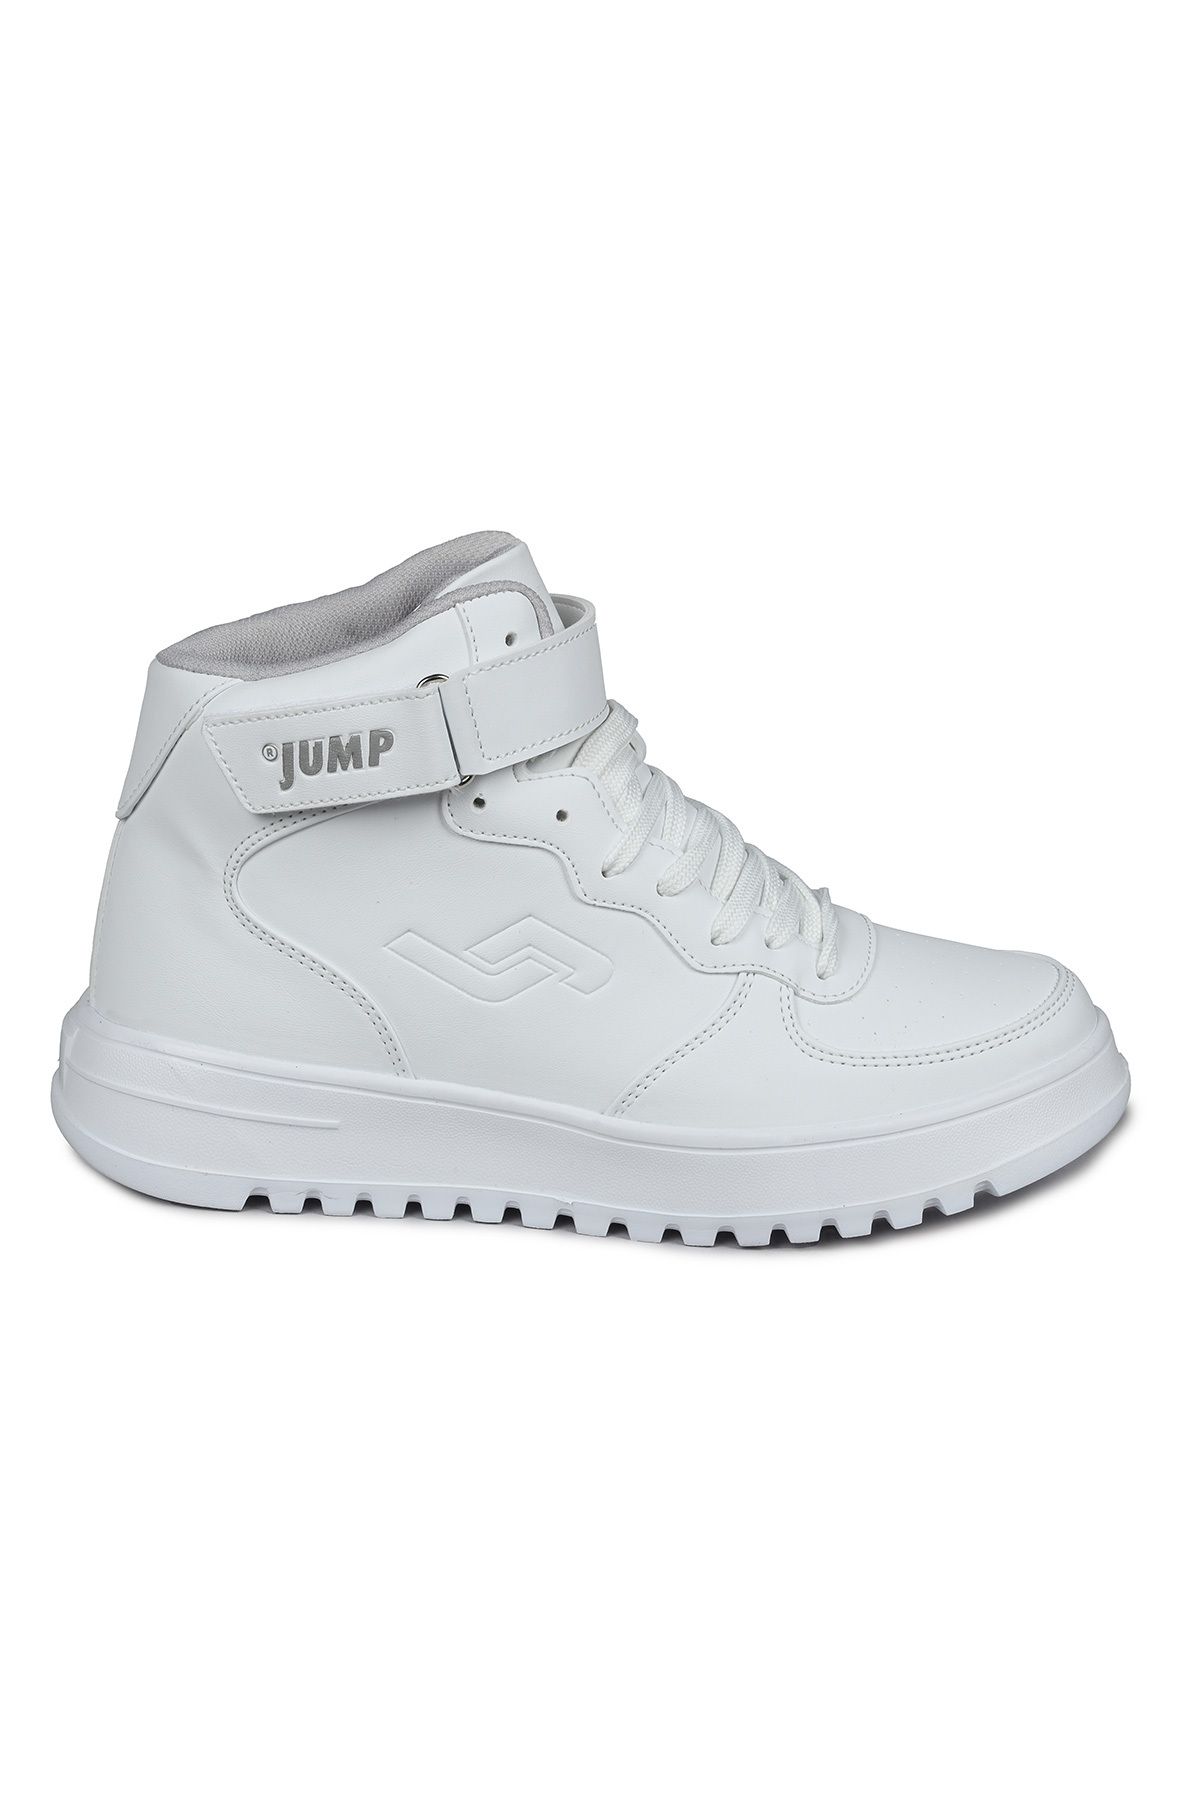 Jump 17308 Yüksek Bilekli Beyaz Kadın Sneaker Günlük Spor Ayakkabı